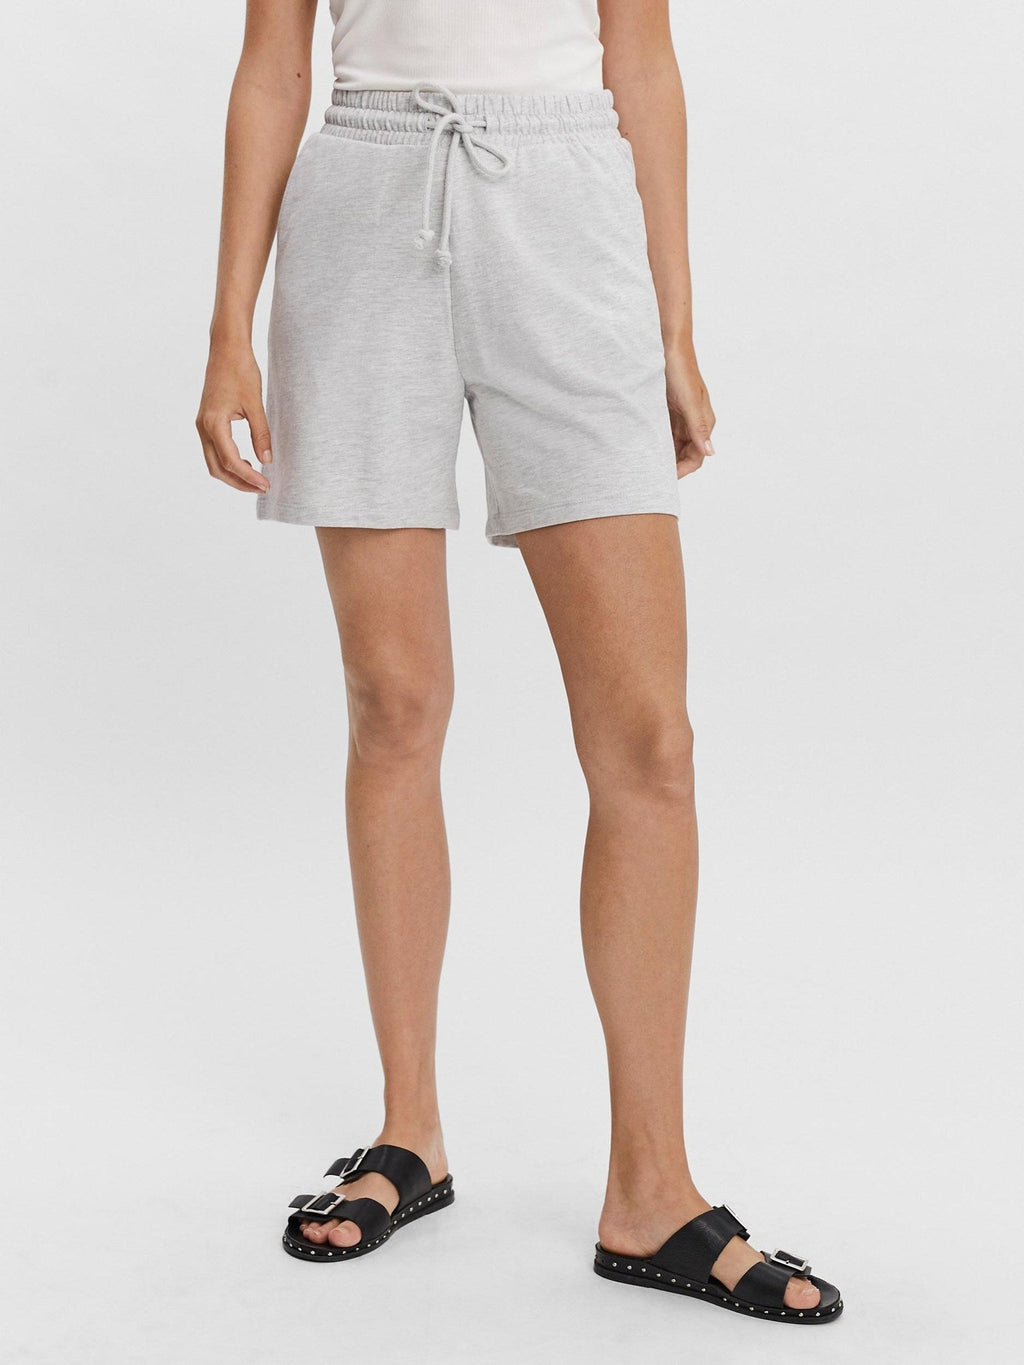 Shorts de sudor Octavia - gris claro